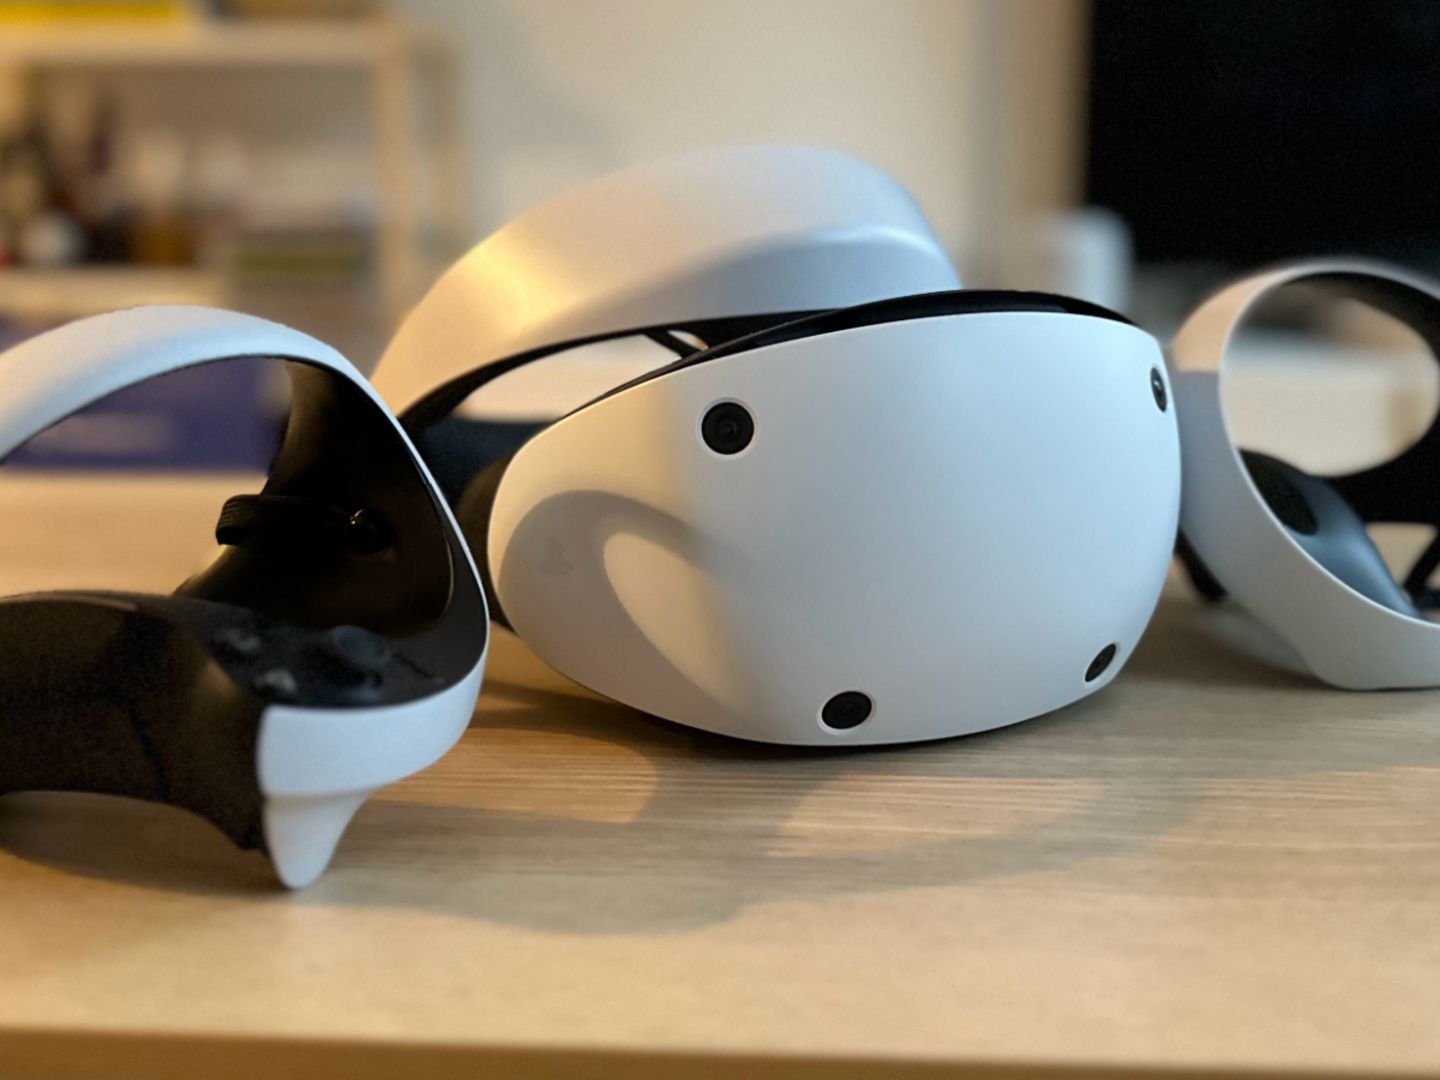 Mainstream große 2 – bringen bleiben doch zwei VR Playstation Hürden in den soll VR